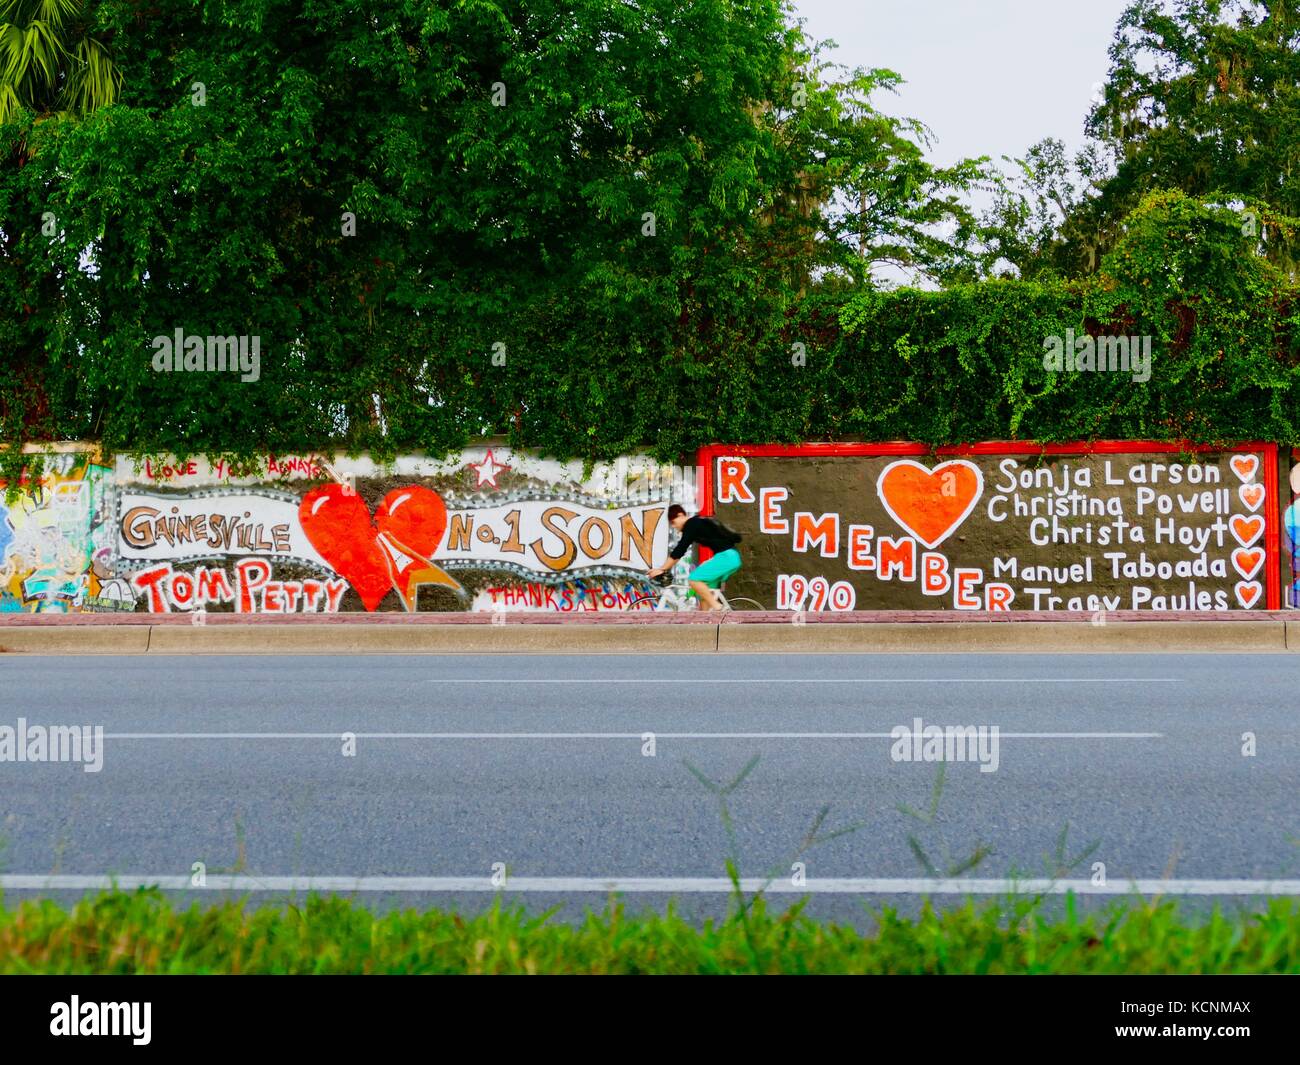 Radfahrer übergibt das Denkmal für Tom Petty auf dem Kamm eines Hügels auf der S.W. 34Th Street an der Wand. Gainesville, Florida, USA. Stockfoto